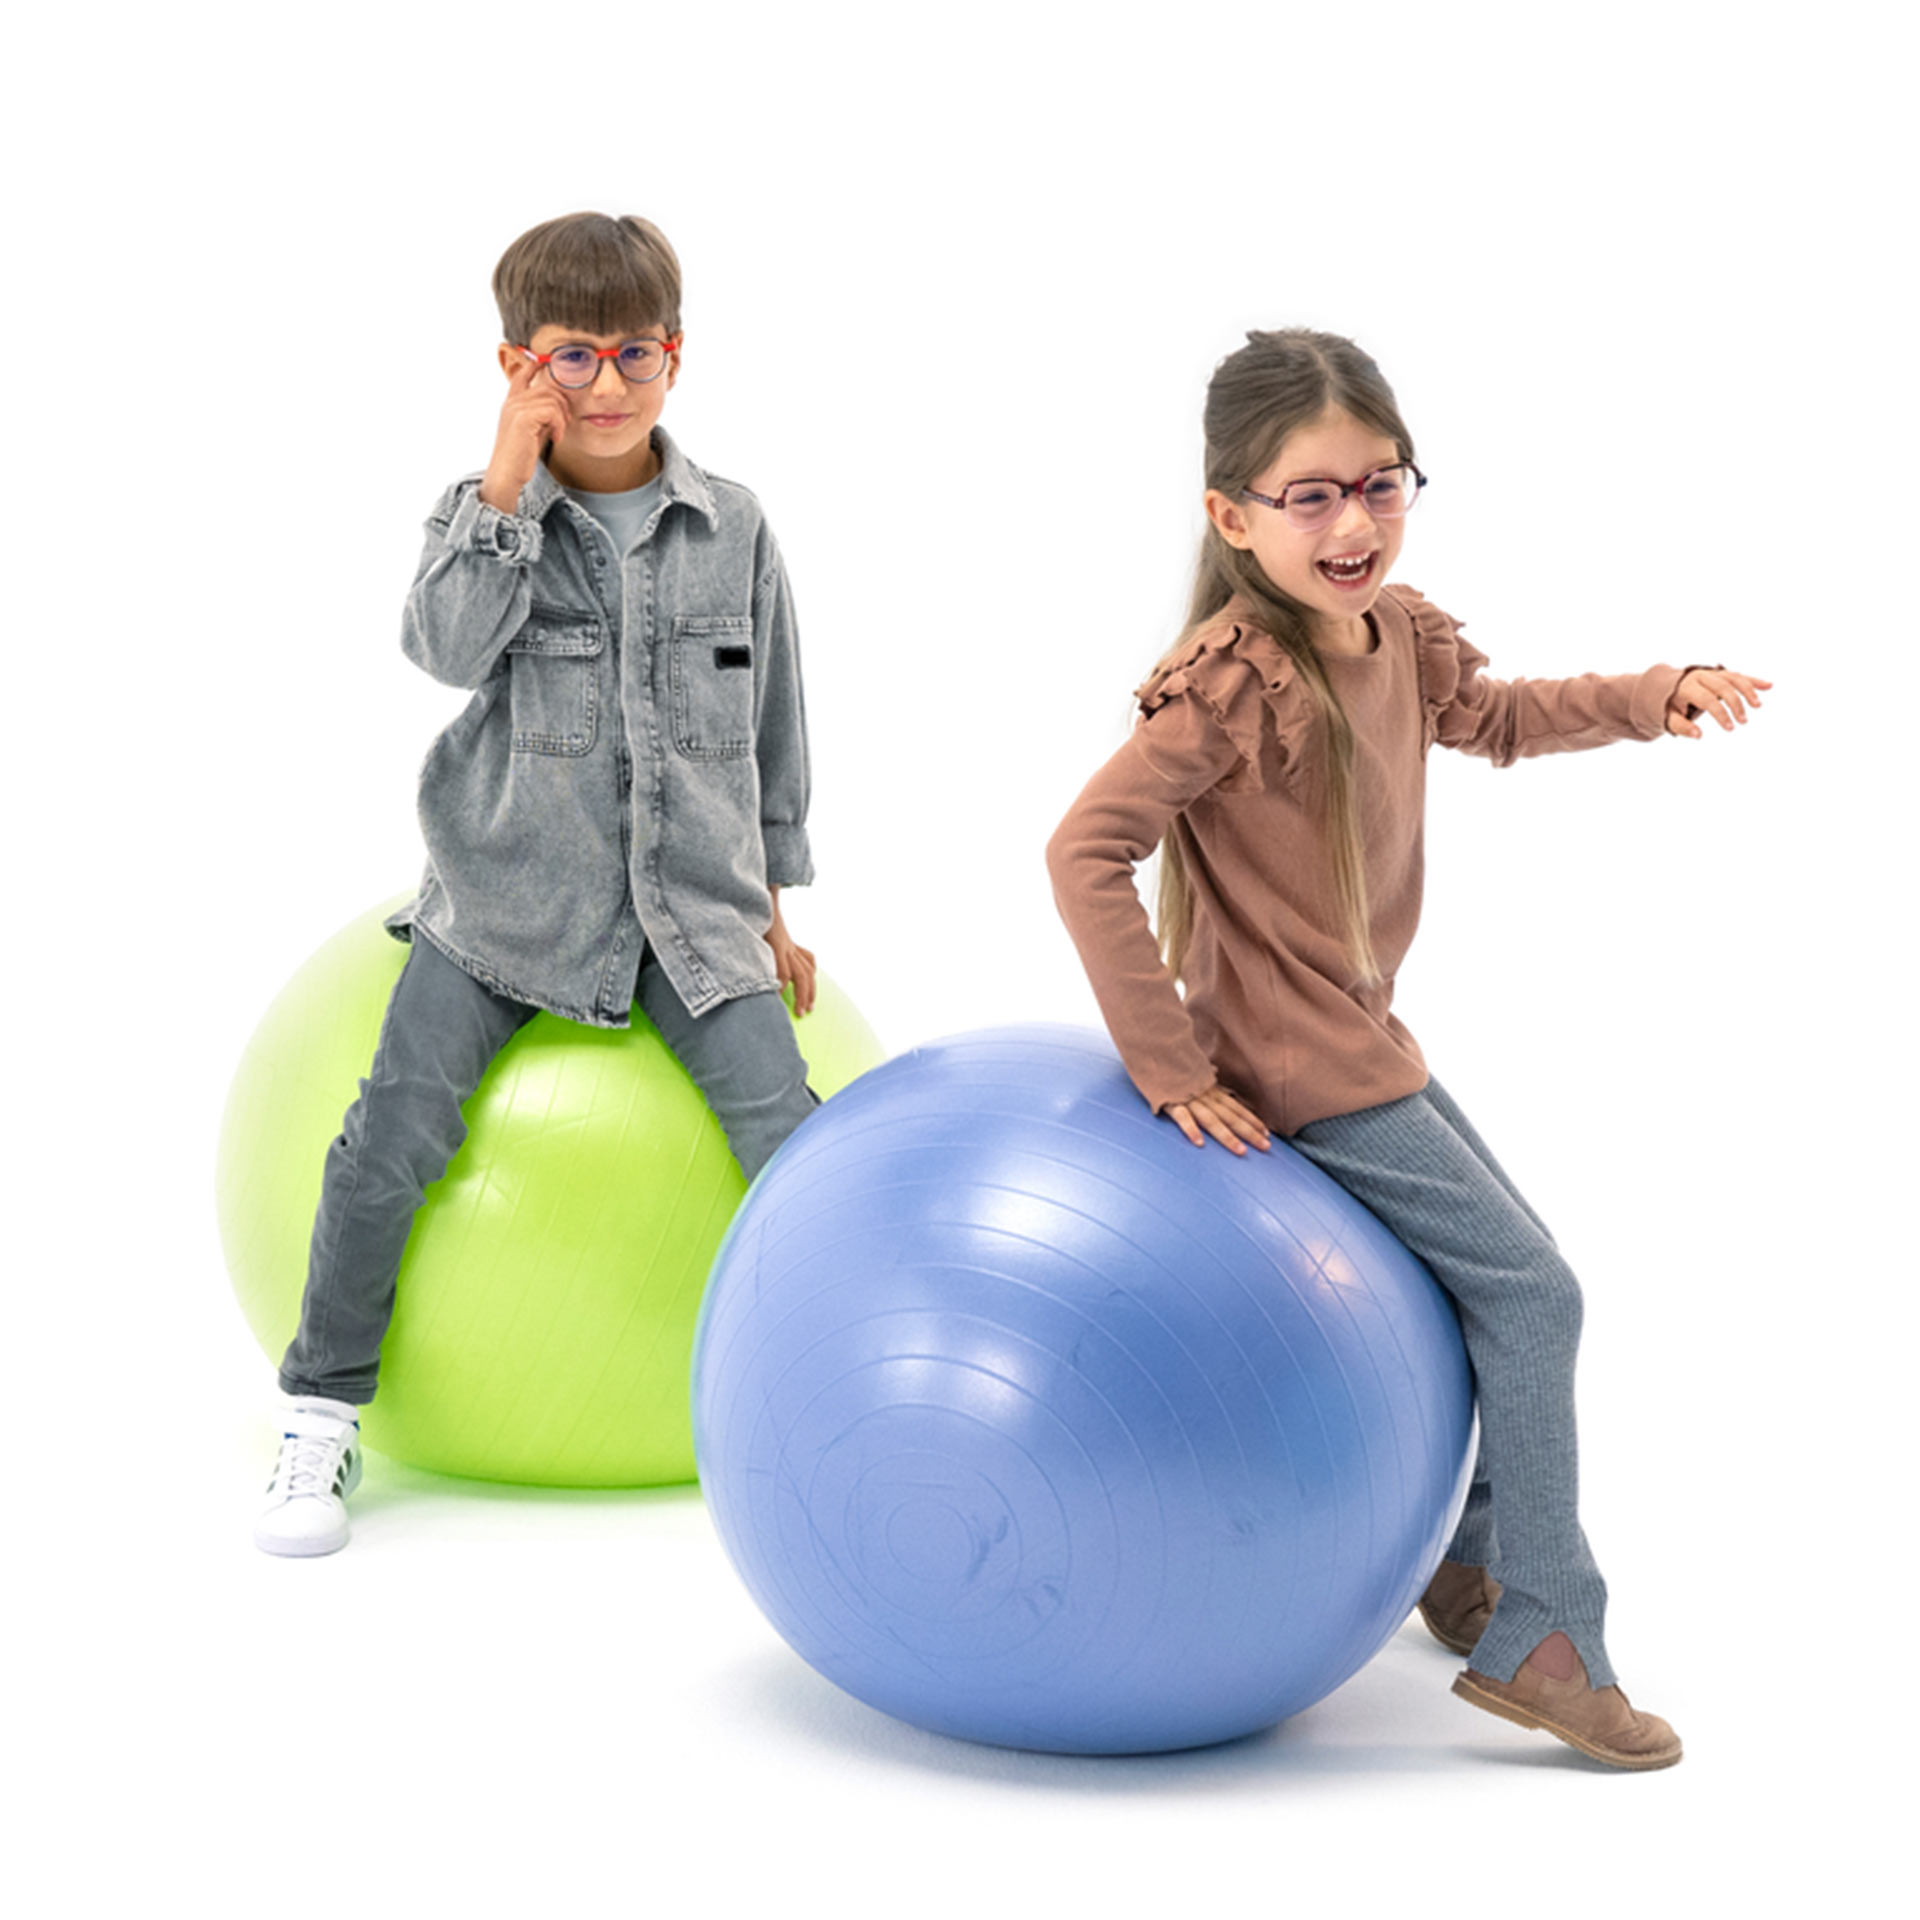 Chlapec a dievča, obaja nosiaci okuliare, sa hravo odrážajú na gymnastických loptách.